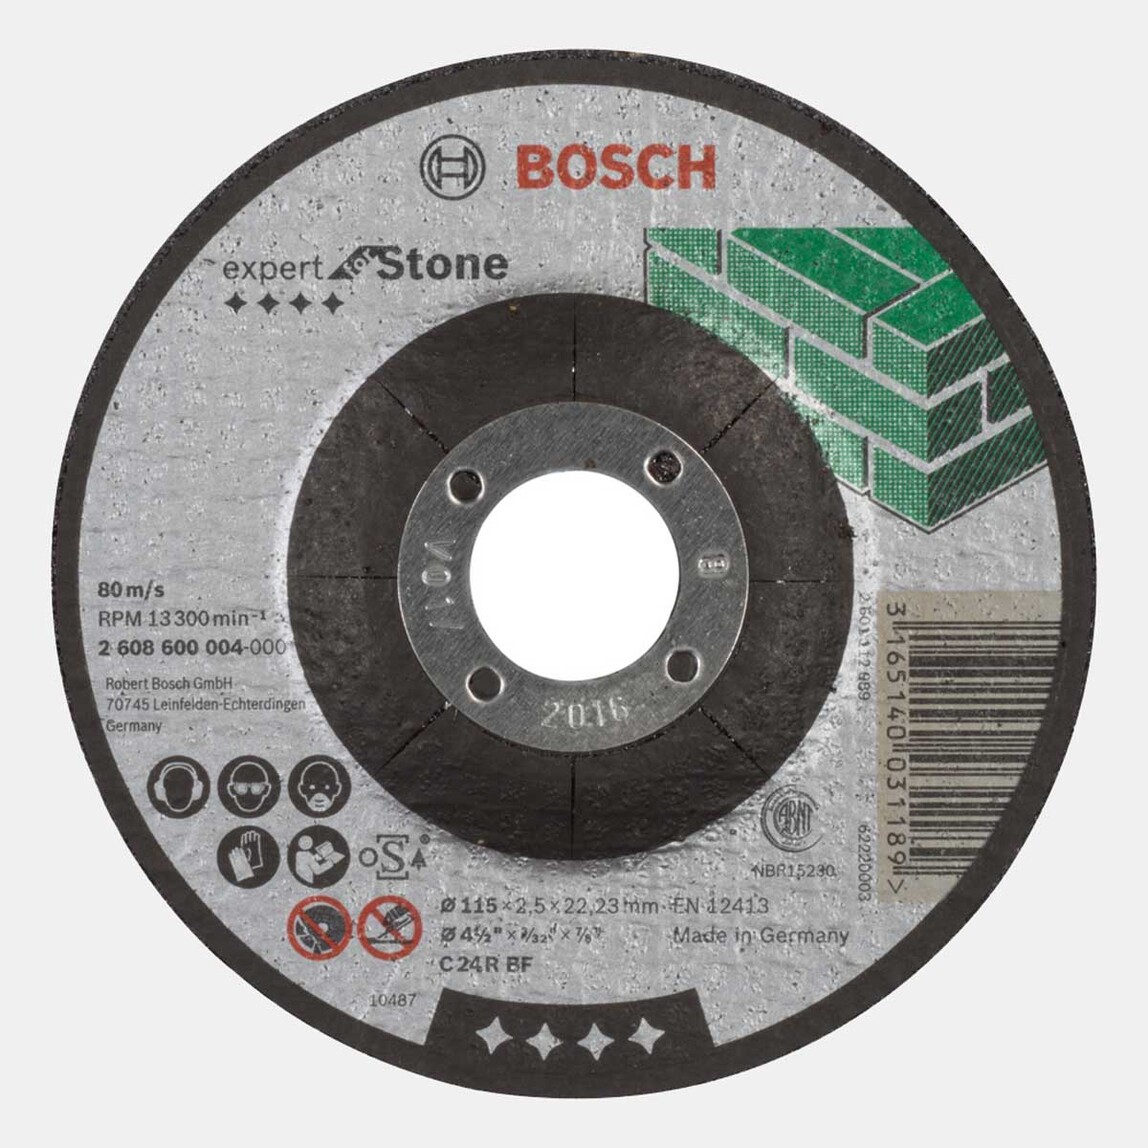    Bosch Mermer Kesme Taşı 115X3 mm   